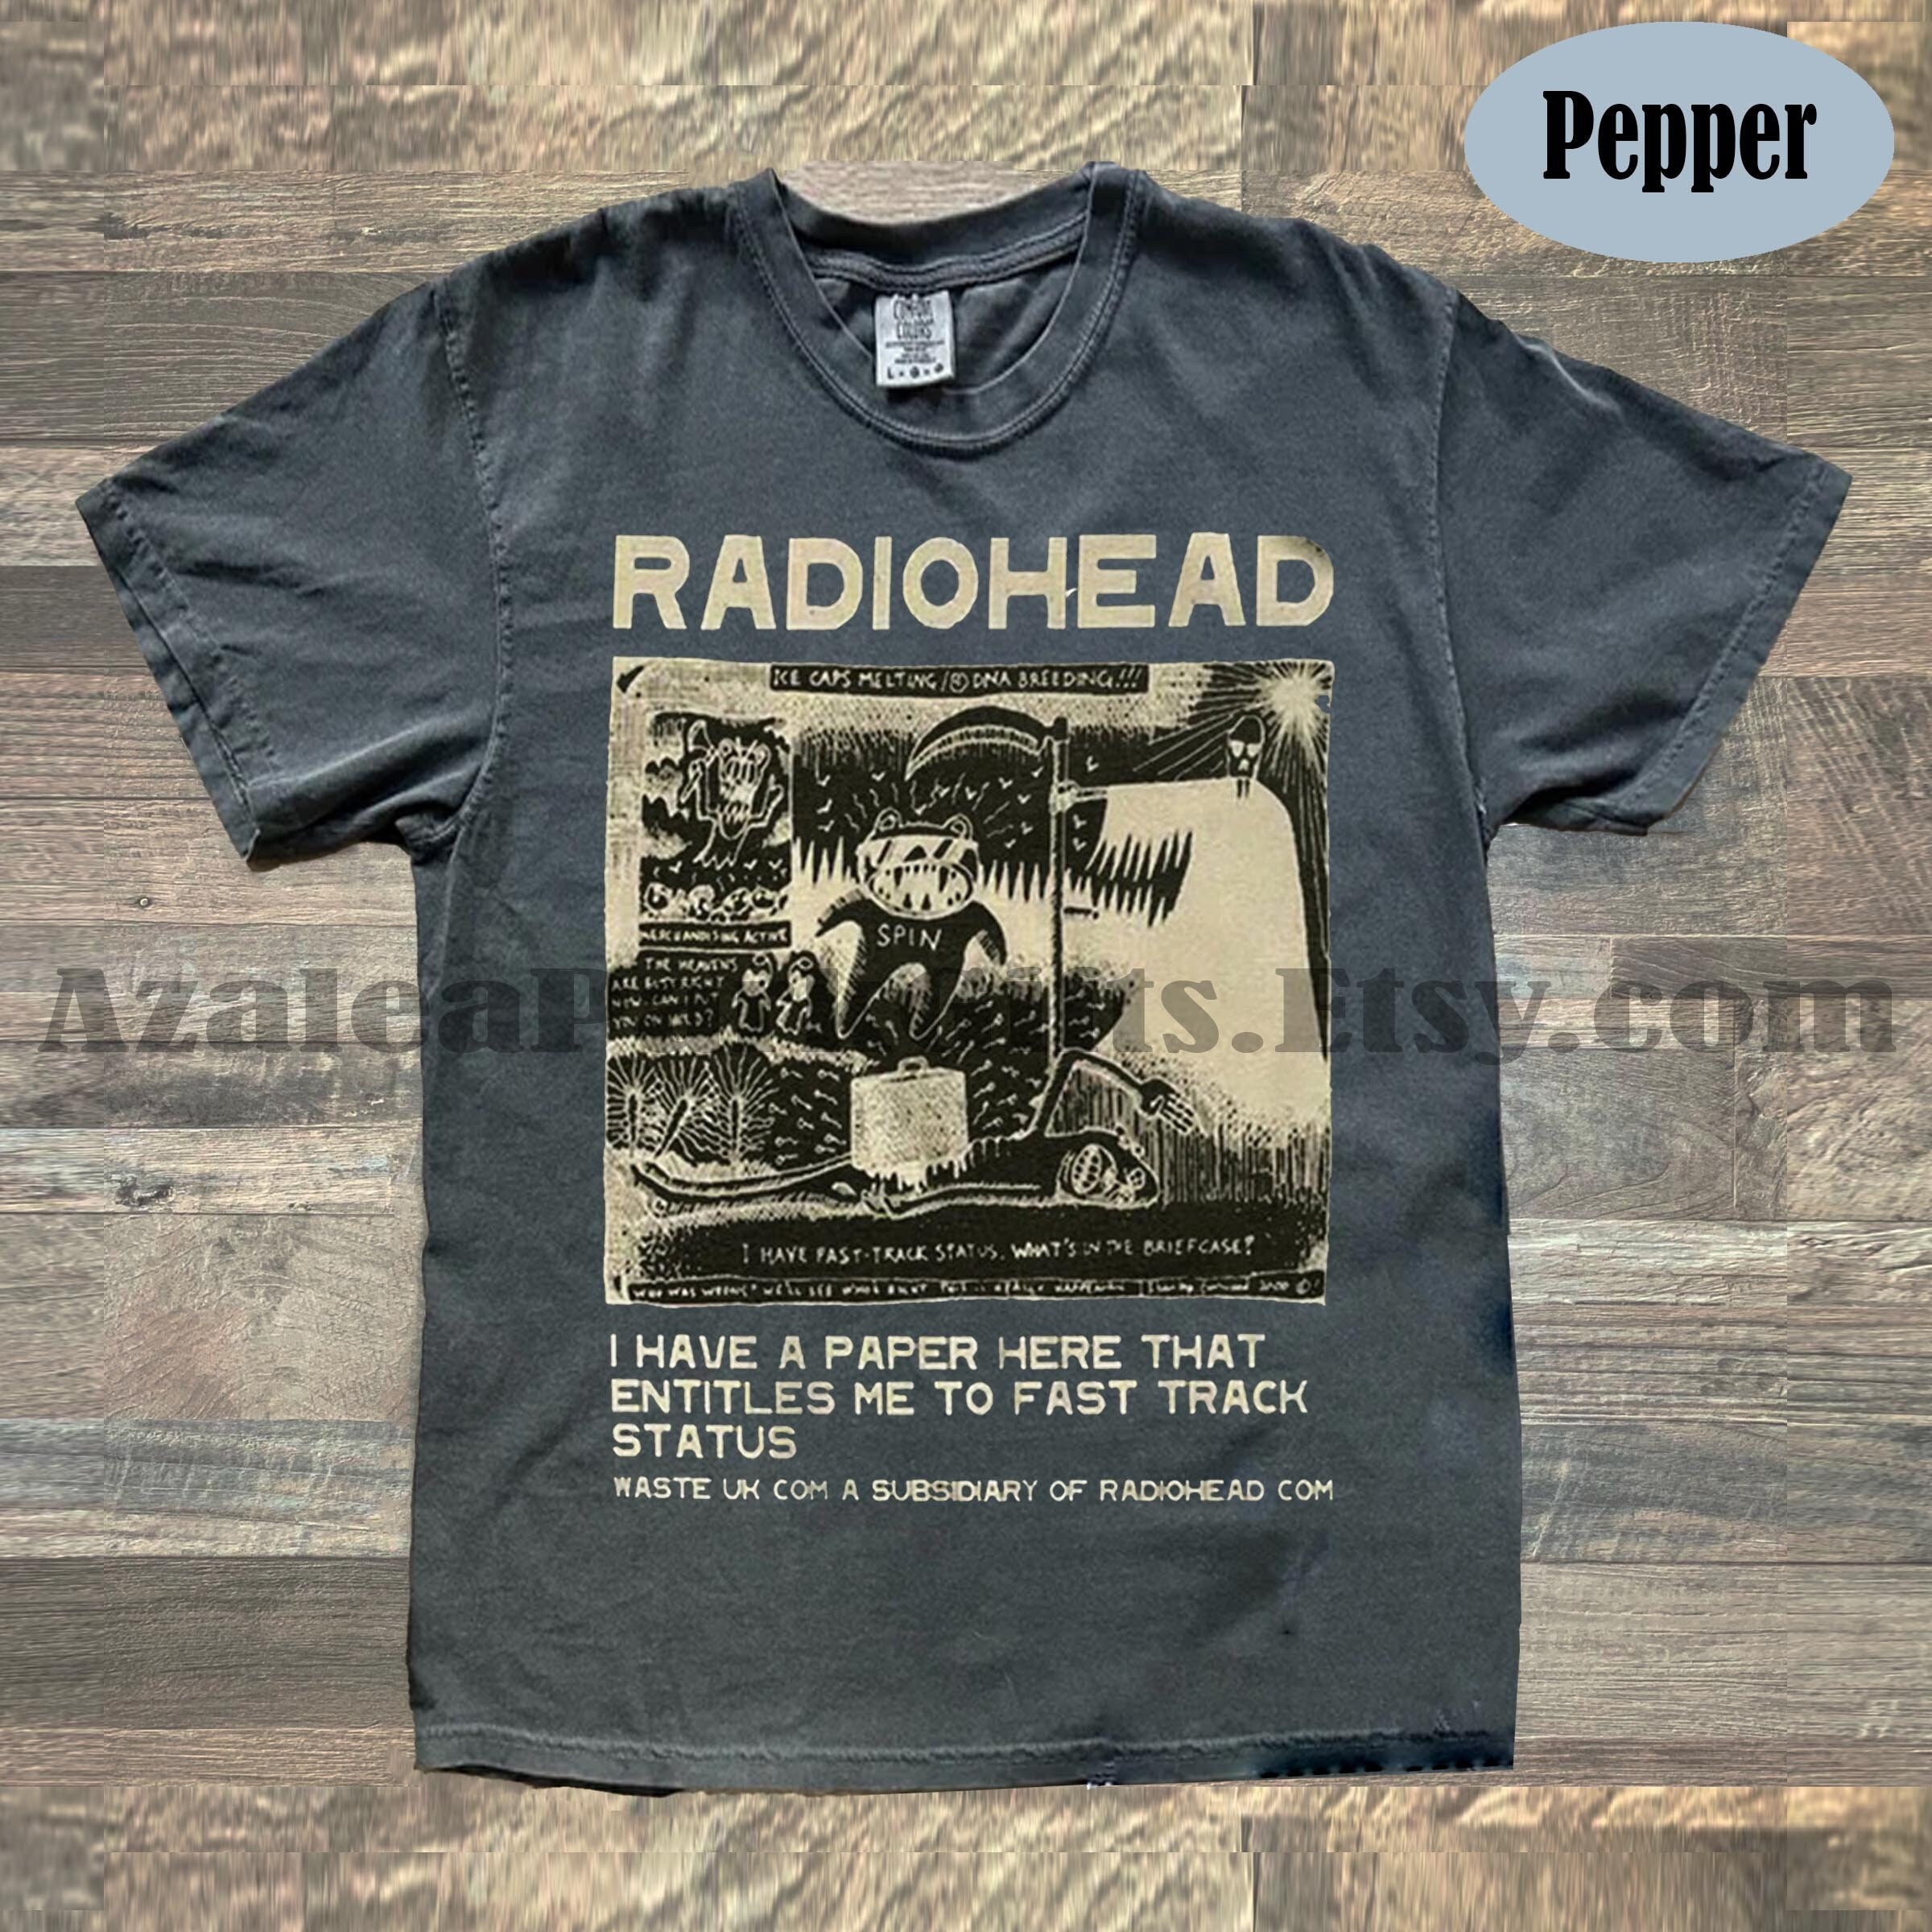 Radiohead Tshirt - Etsy